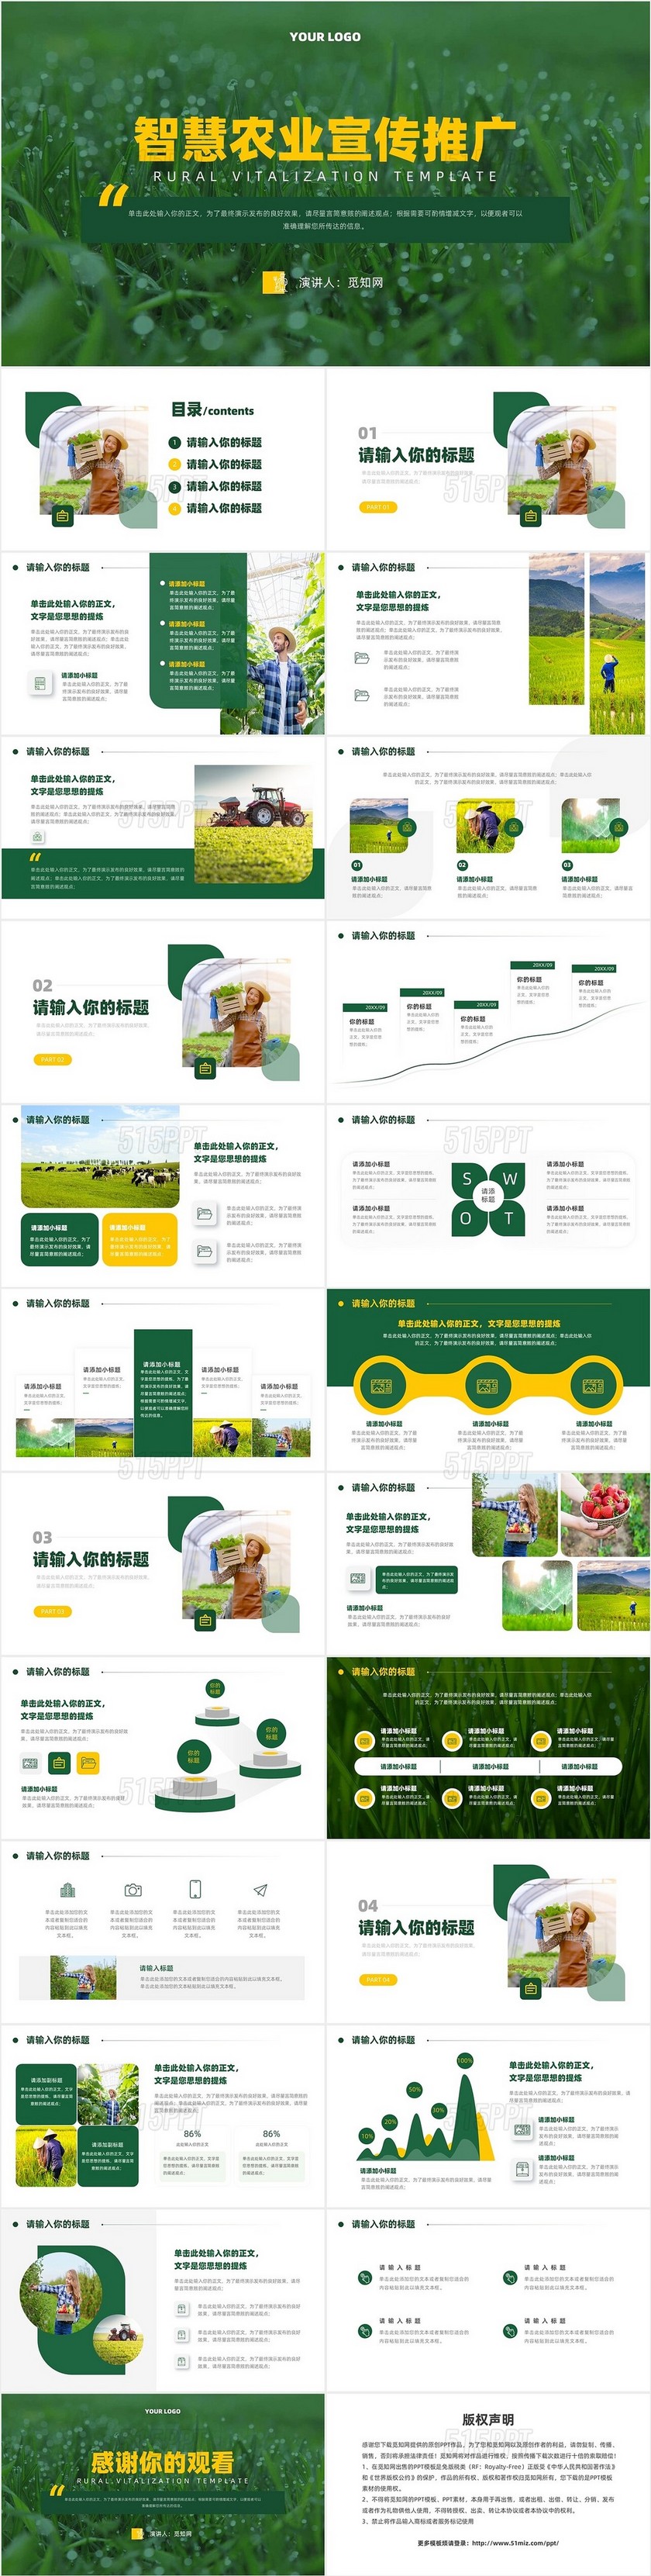 绿色智慧农业宣传推广介绍PPT模板